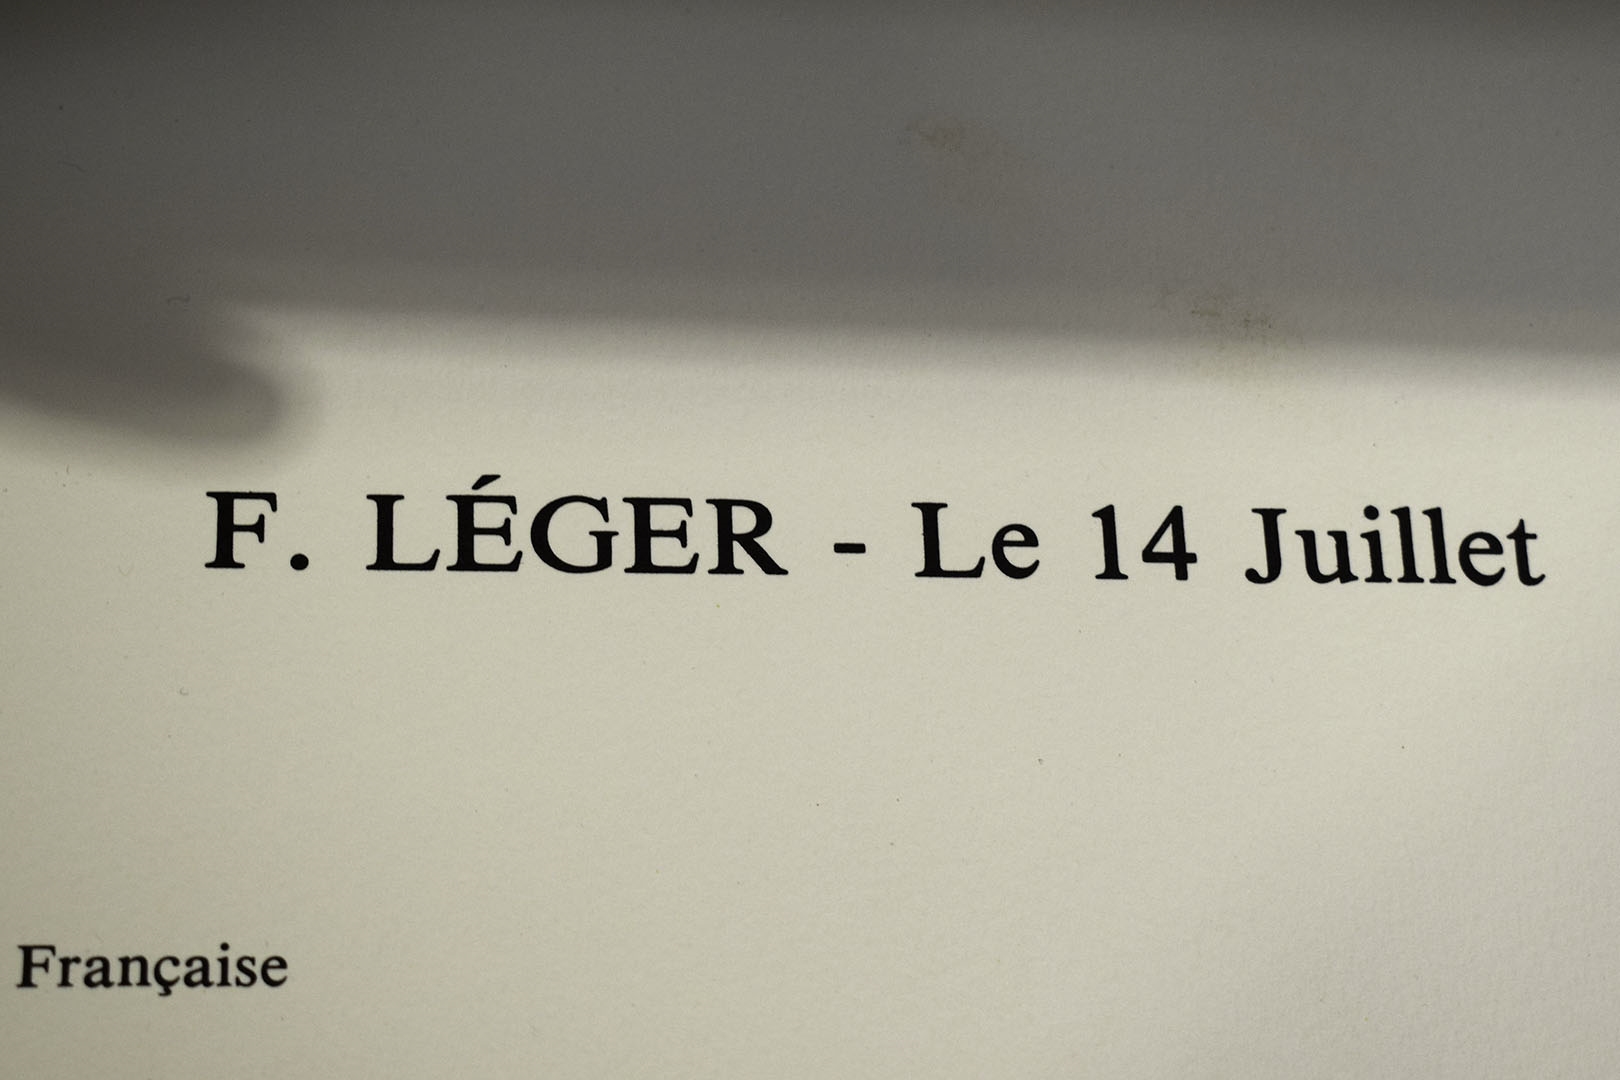 Artwork by Fernand Léger, Le 14 Juillet, Made of POSTER